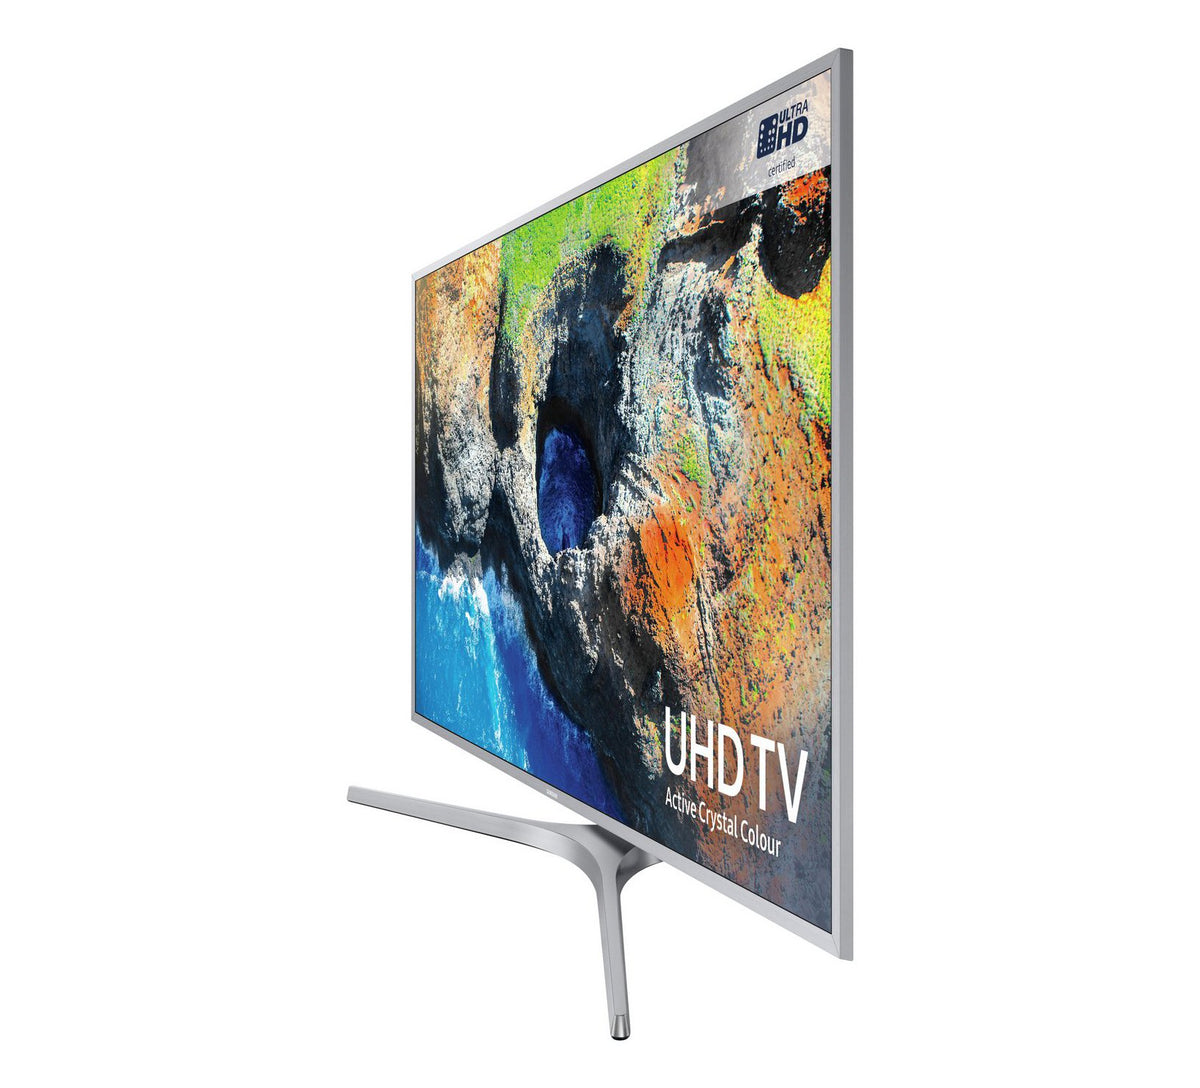 TV de 40 pulgadas UHD 4K Smart TV Serie KU6400